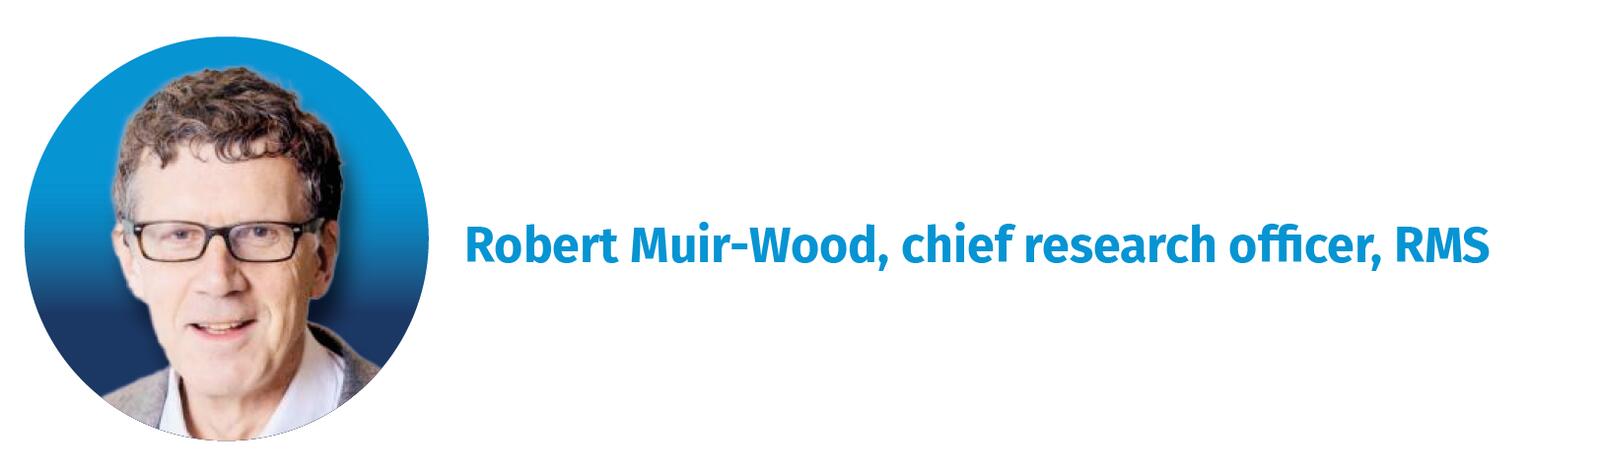 Robert Muir-Wood